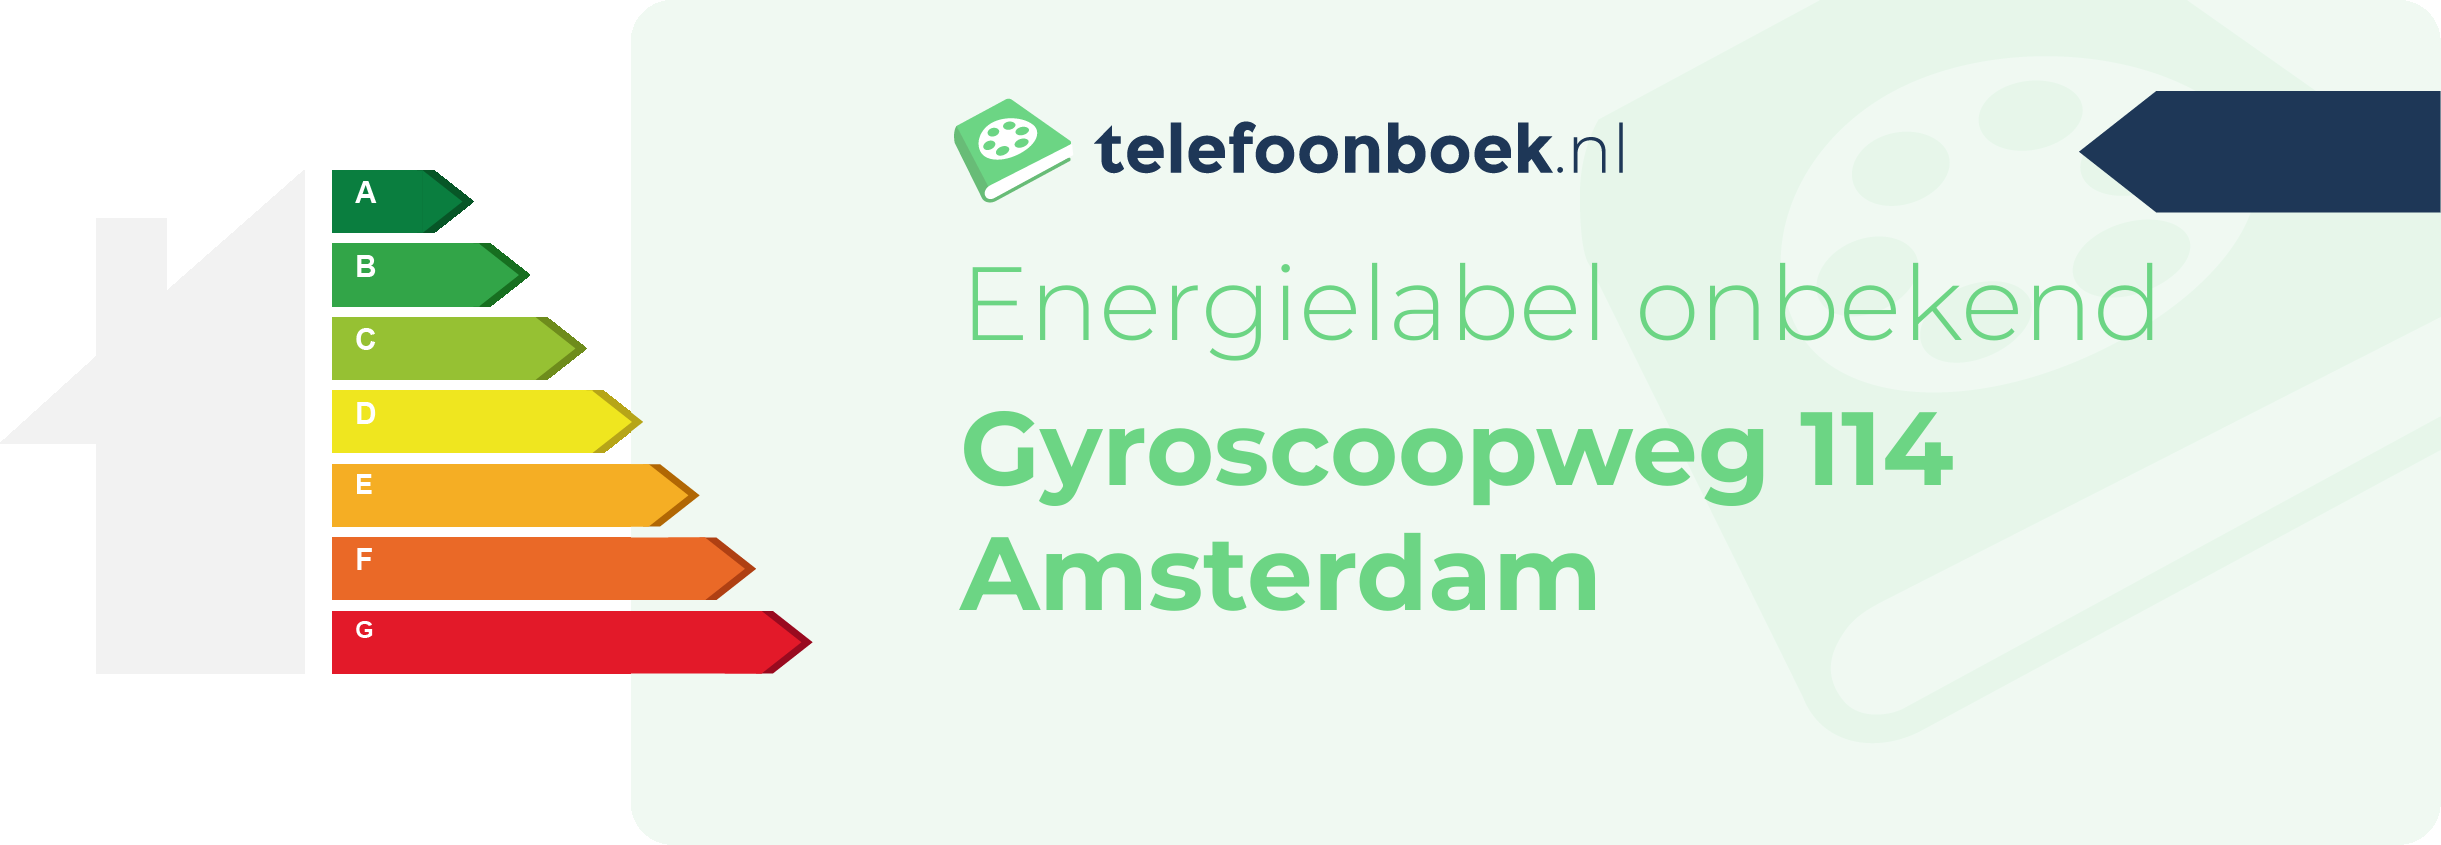 Energielabel Gyroscoopweg 114 Amsterdam